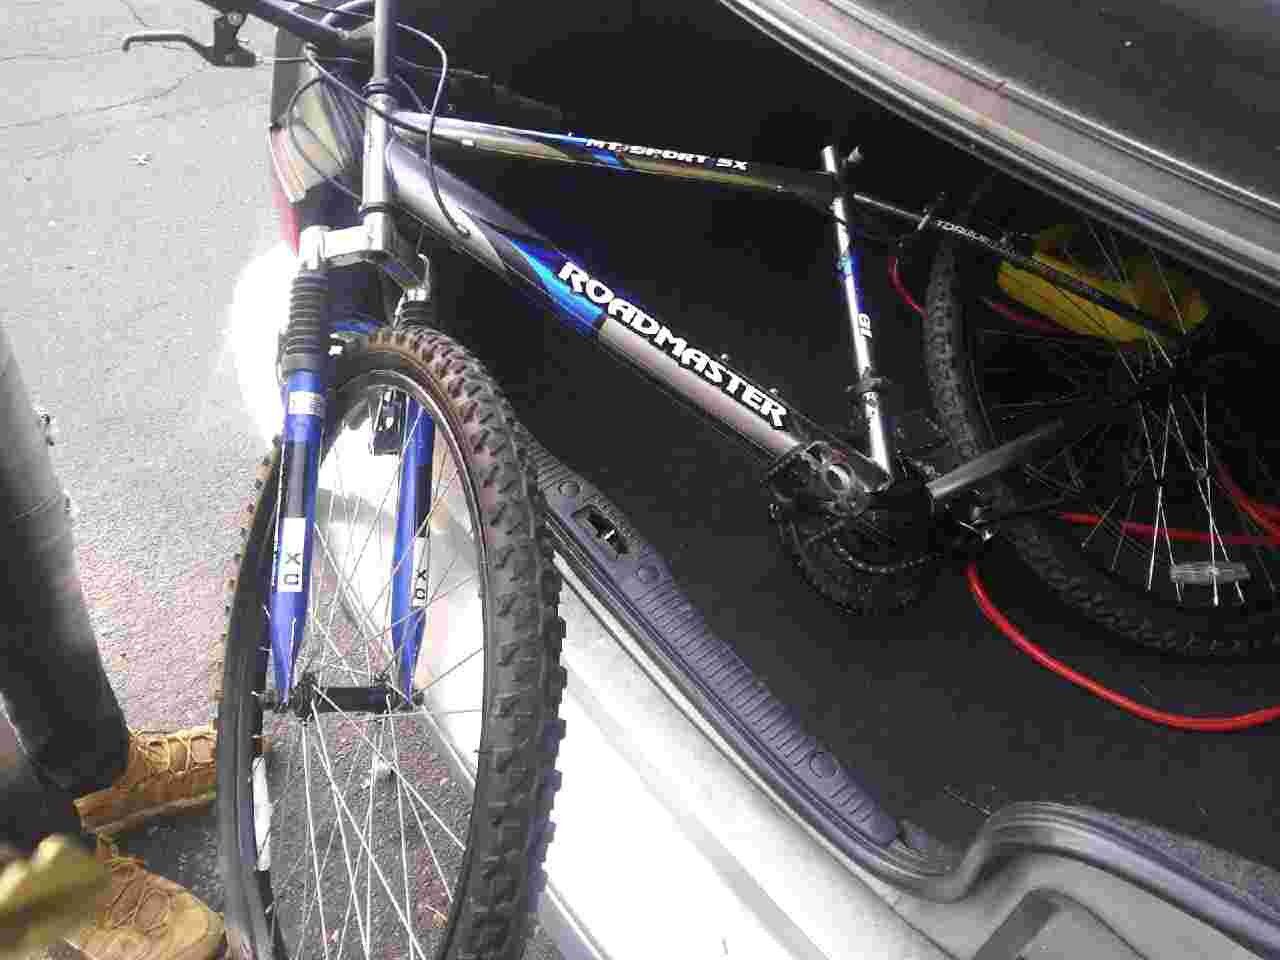 Roadmaster mt sport sx Mountain bike blue